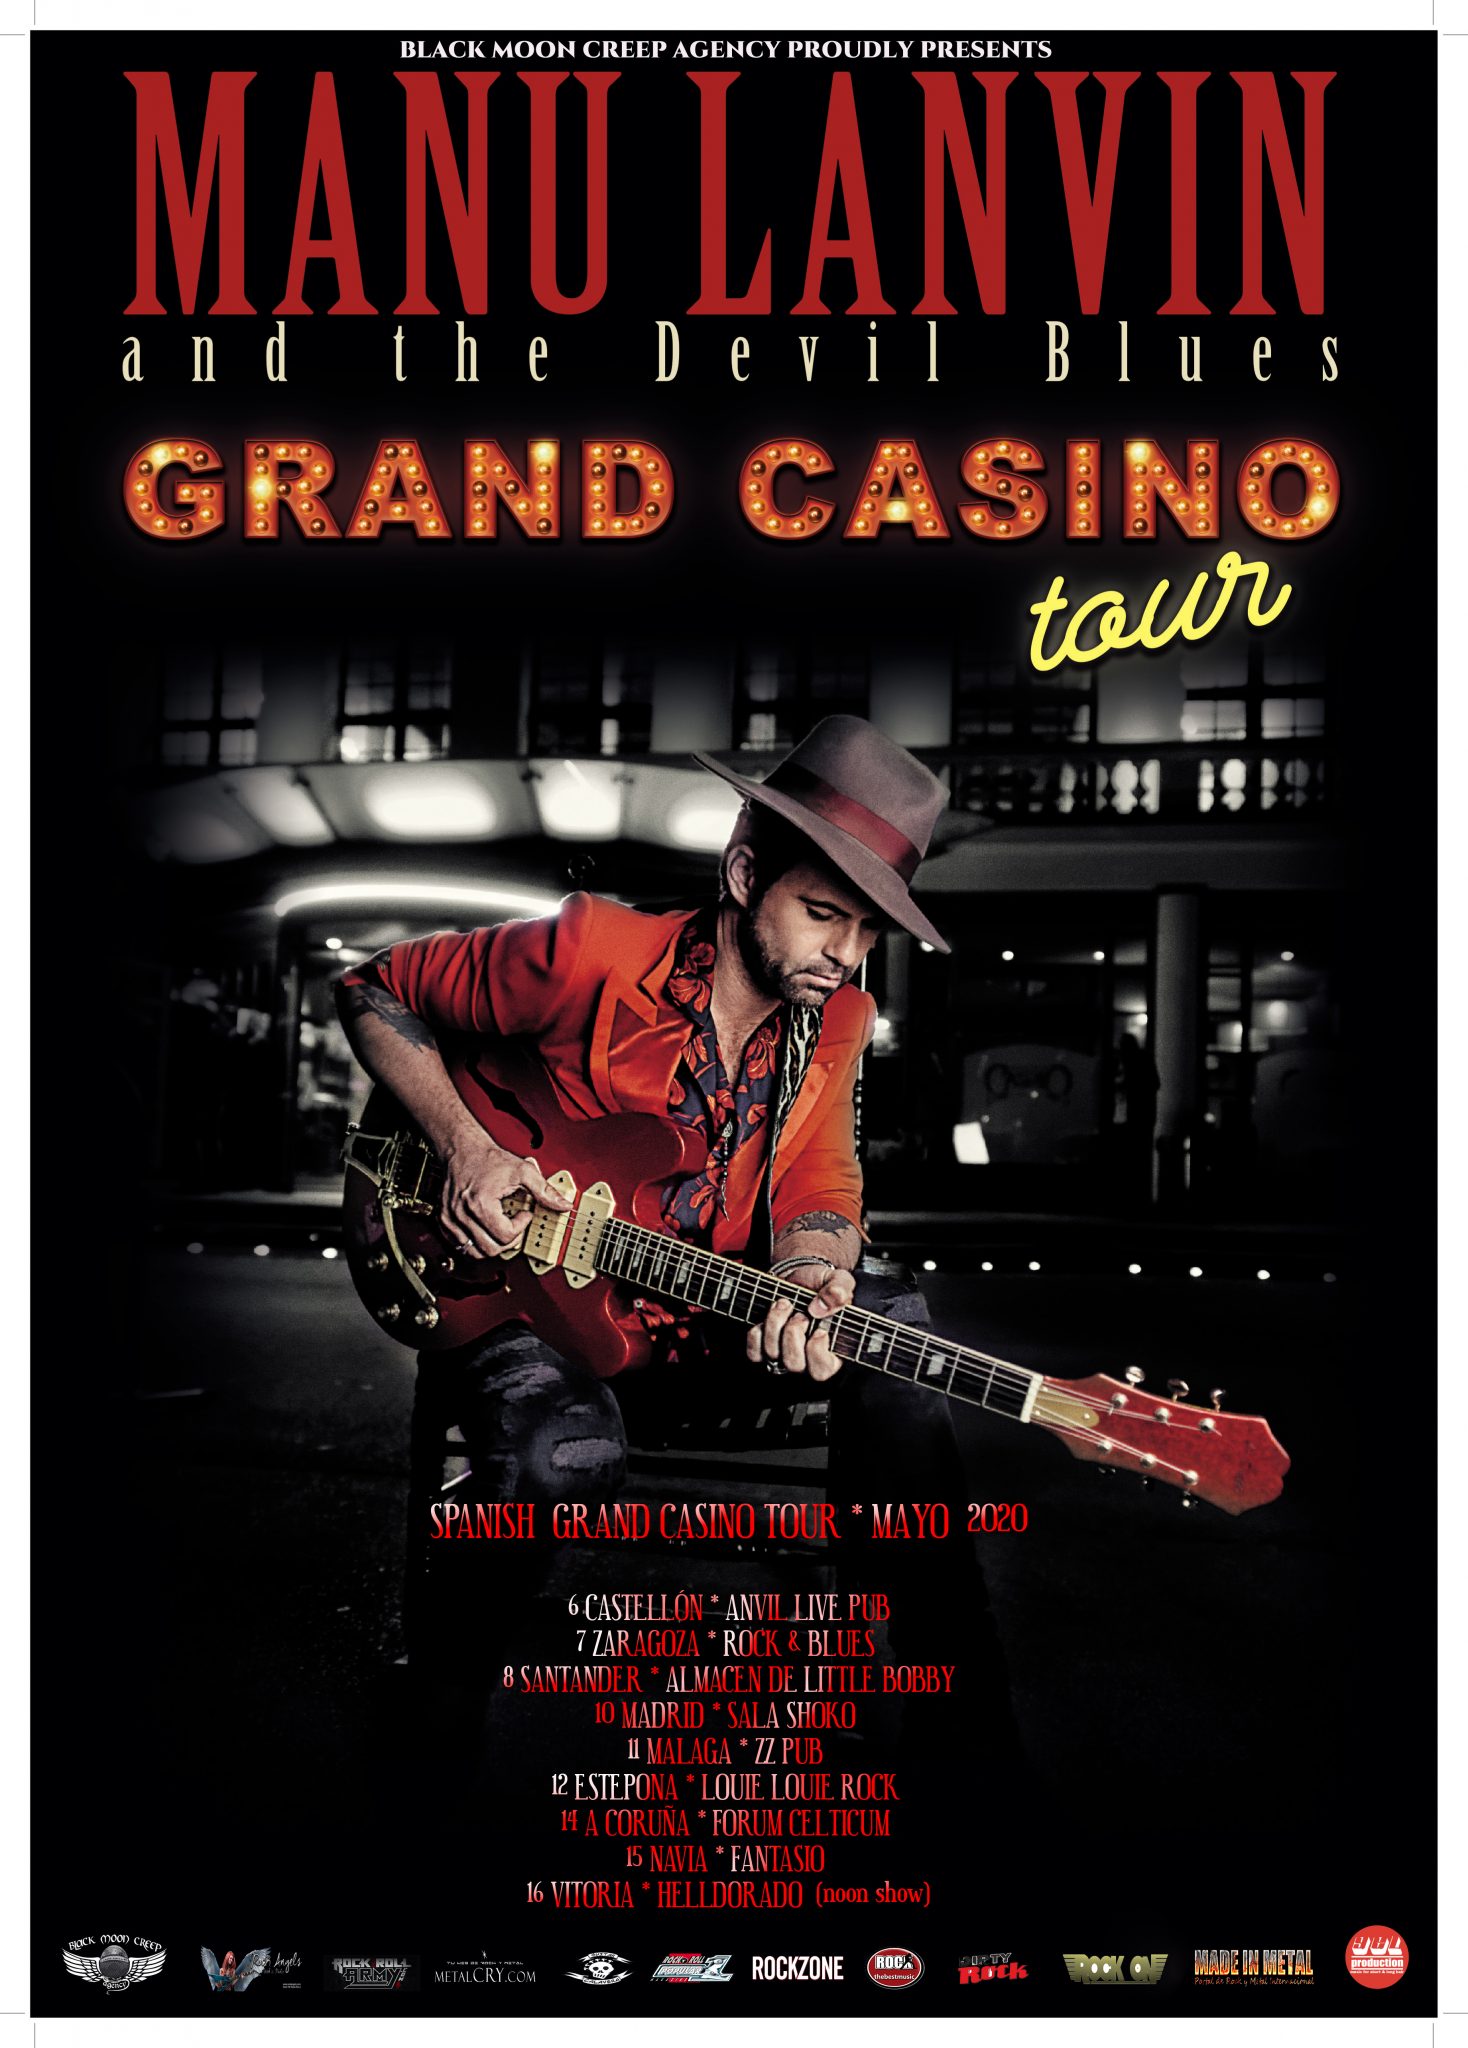 MANU LANVIN & THE DEVIL BLUES – Spanish Grand Casino Tour 2020